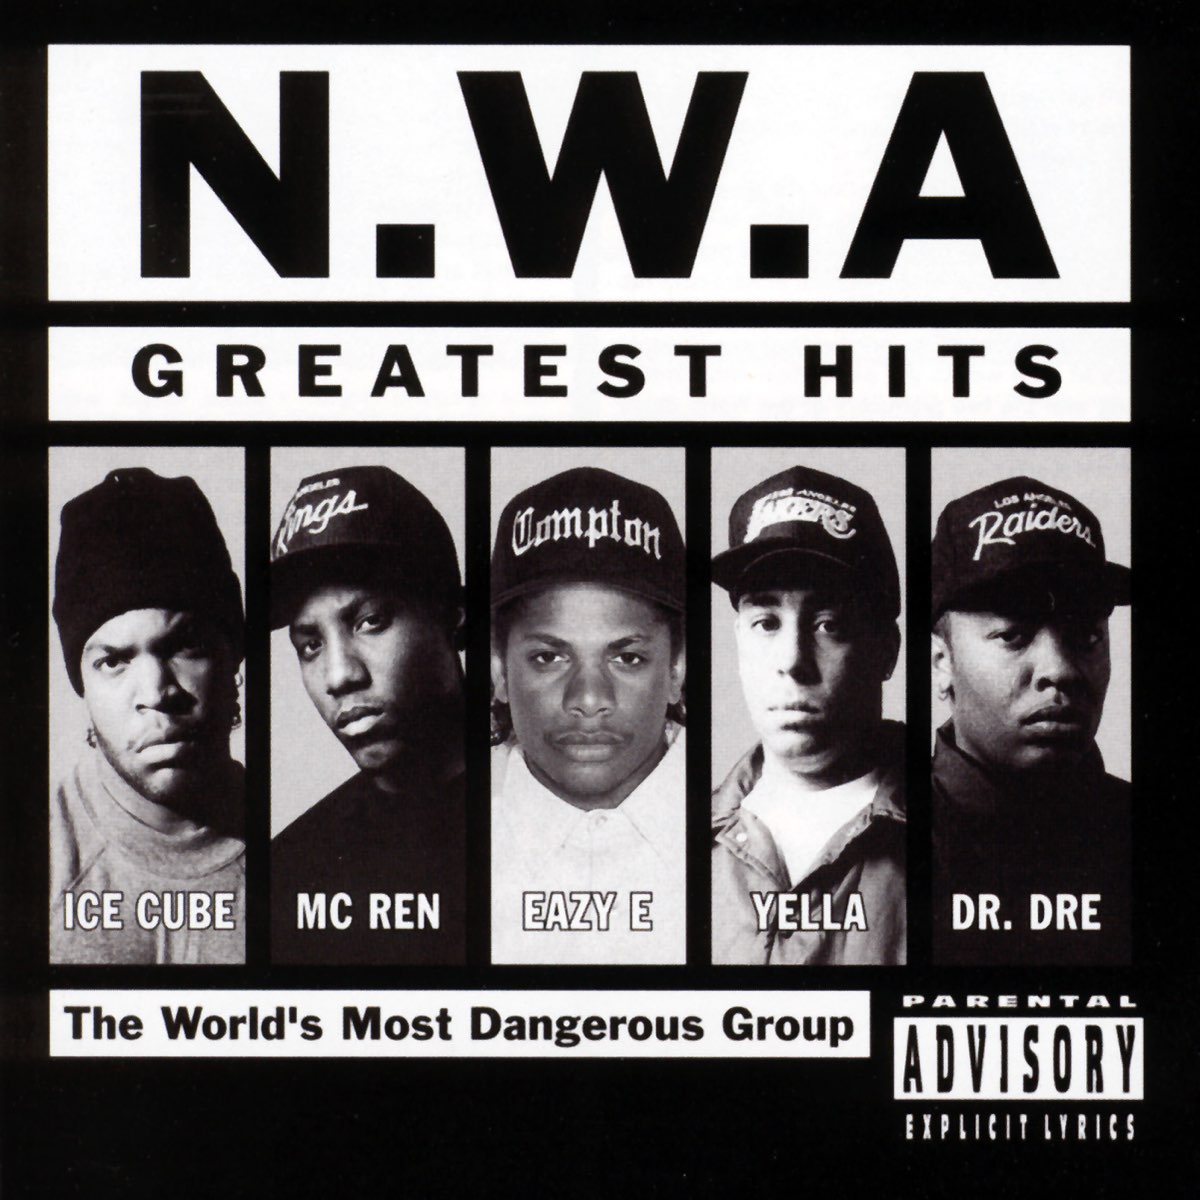 N.W.A. Greatest Hits - Album by N.W.A - Apple Music